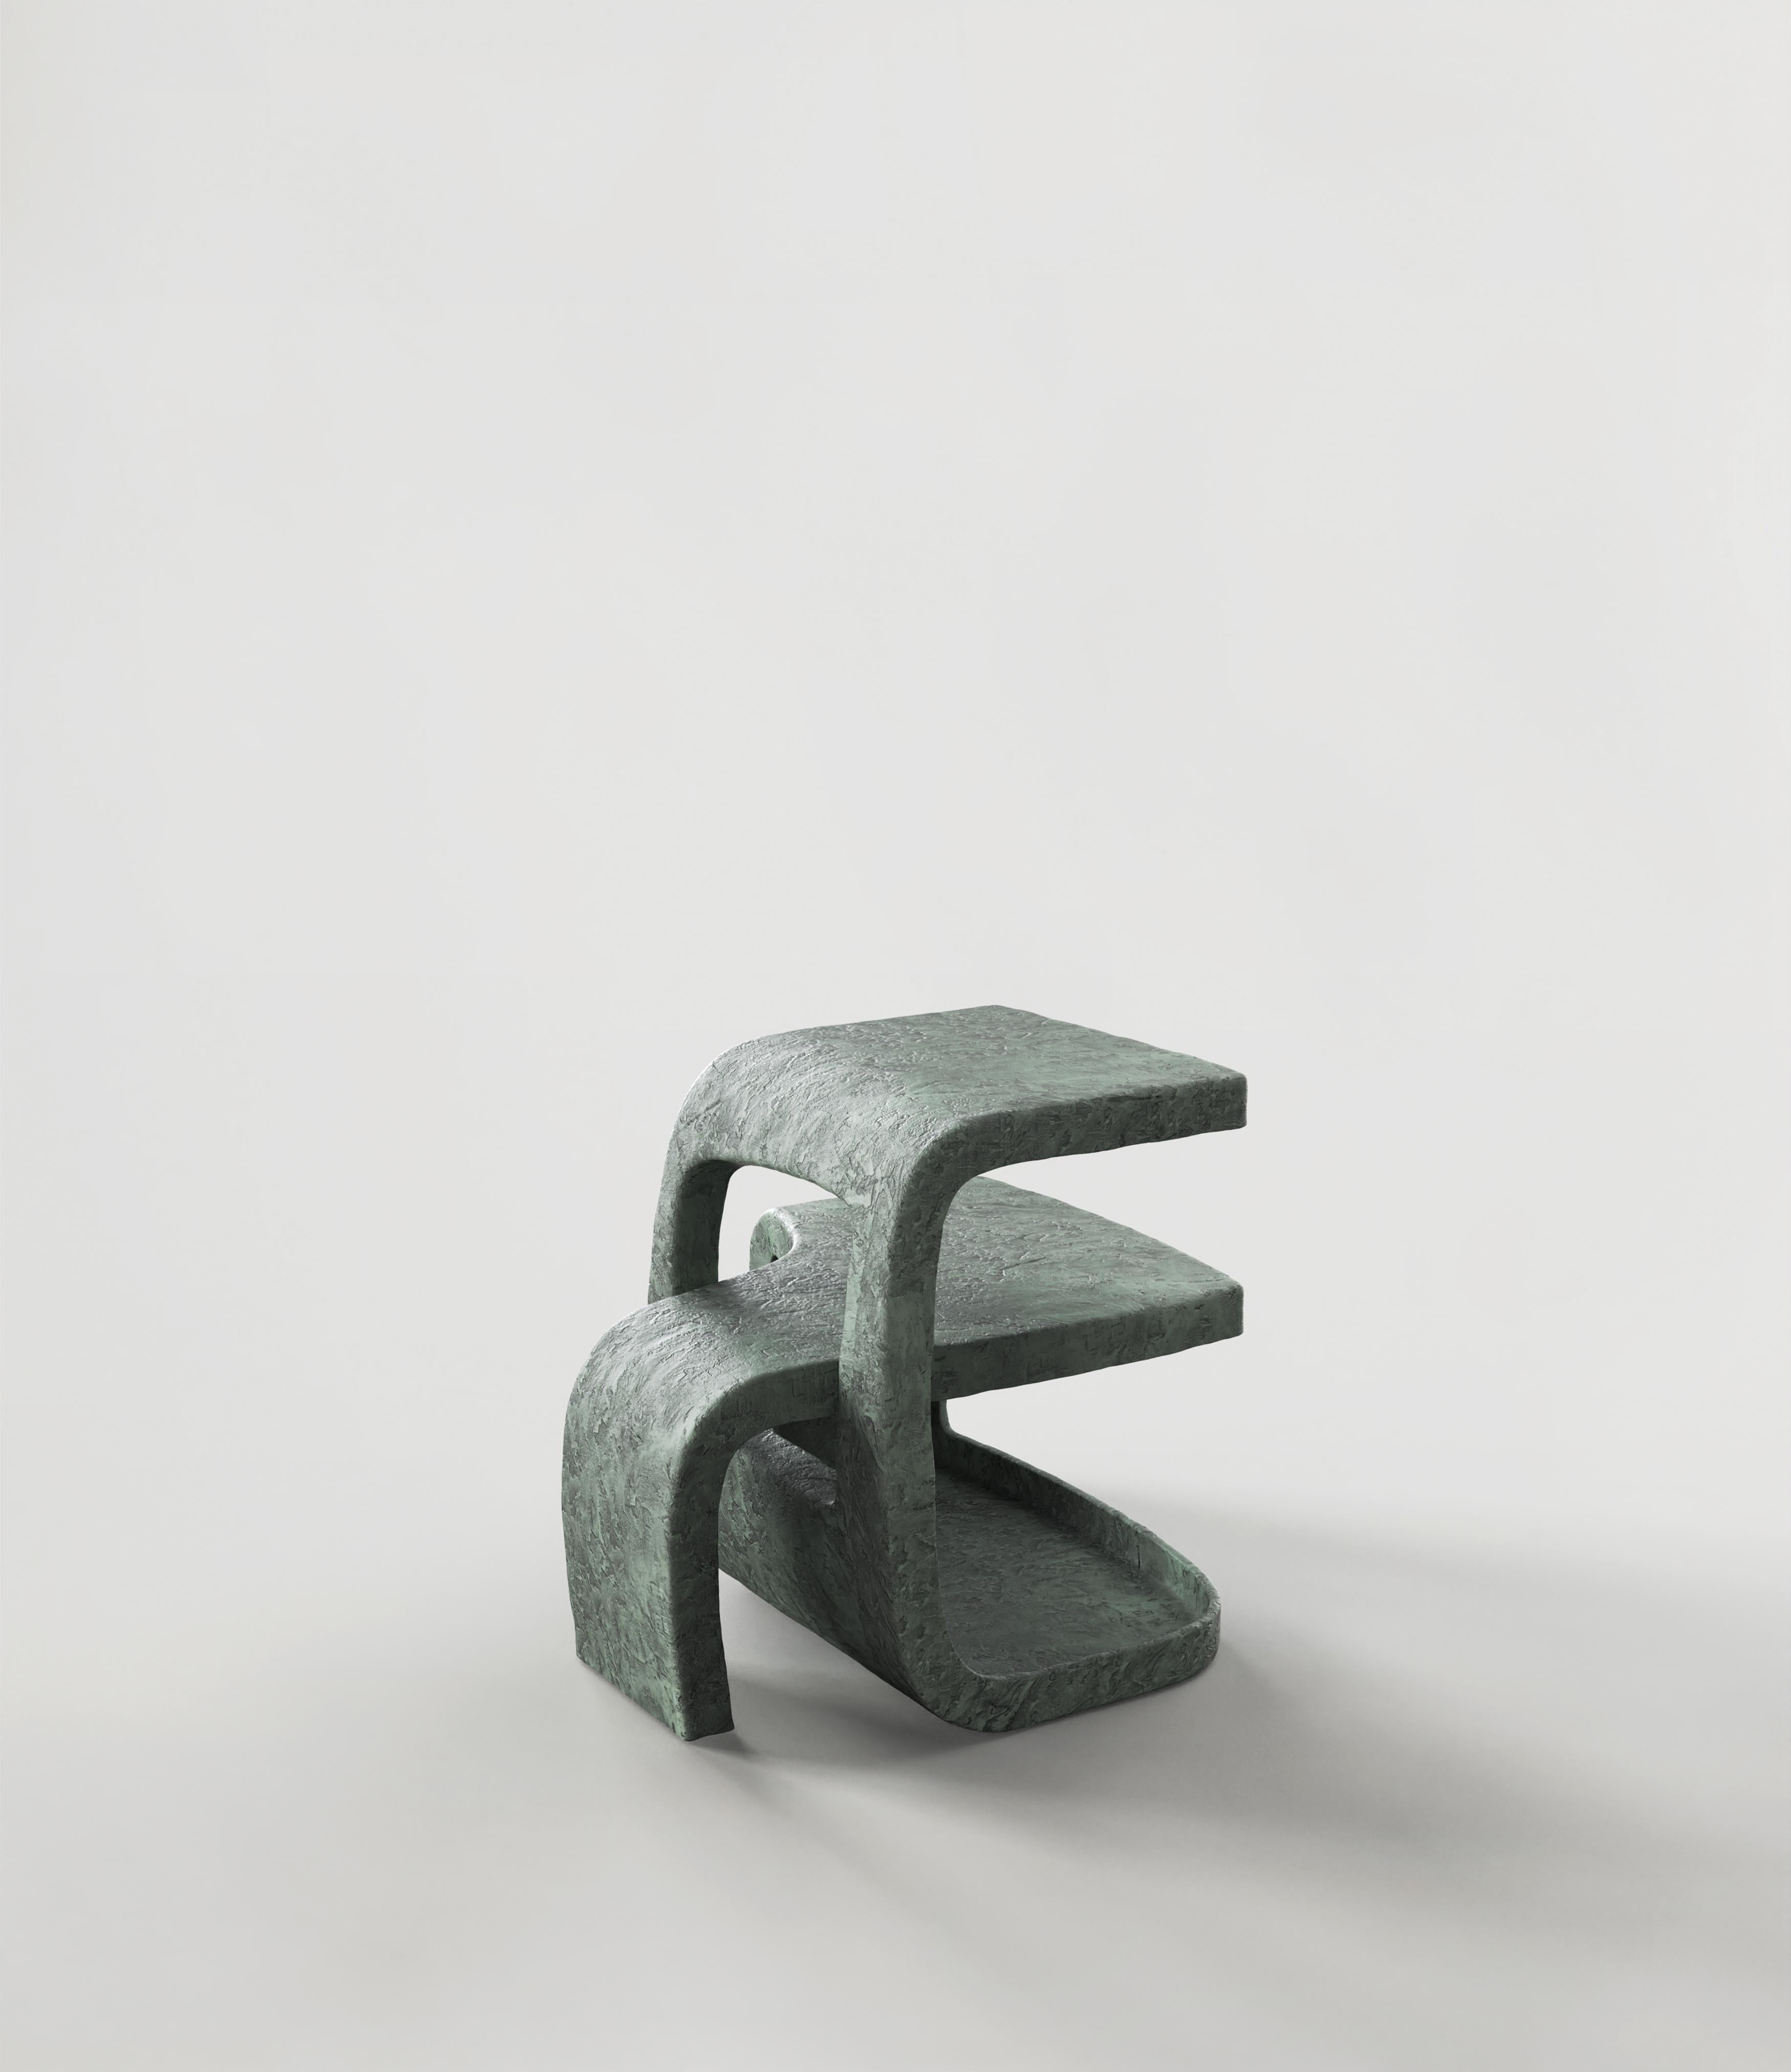 Contemporary Limited Edition Bronze Table, Vertigo V1 by Simone Fanciullacci In New Condition For Sale In Milano, IT